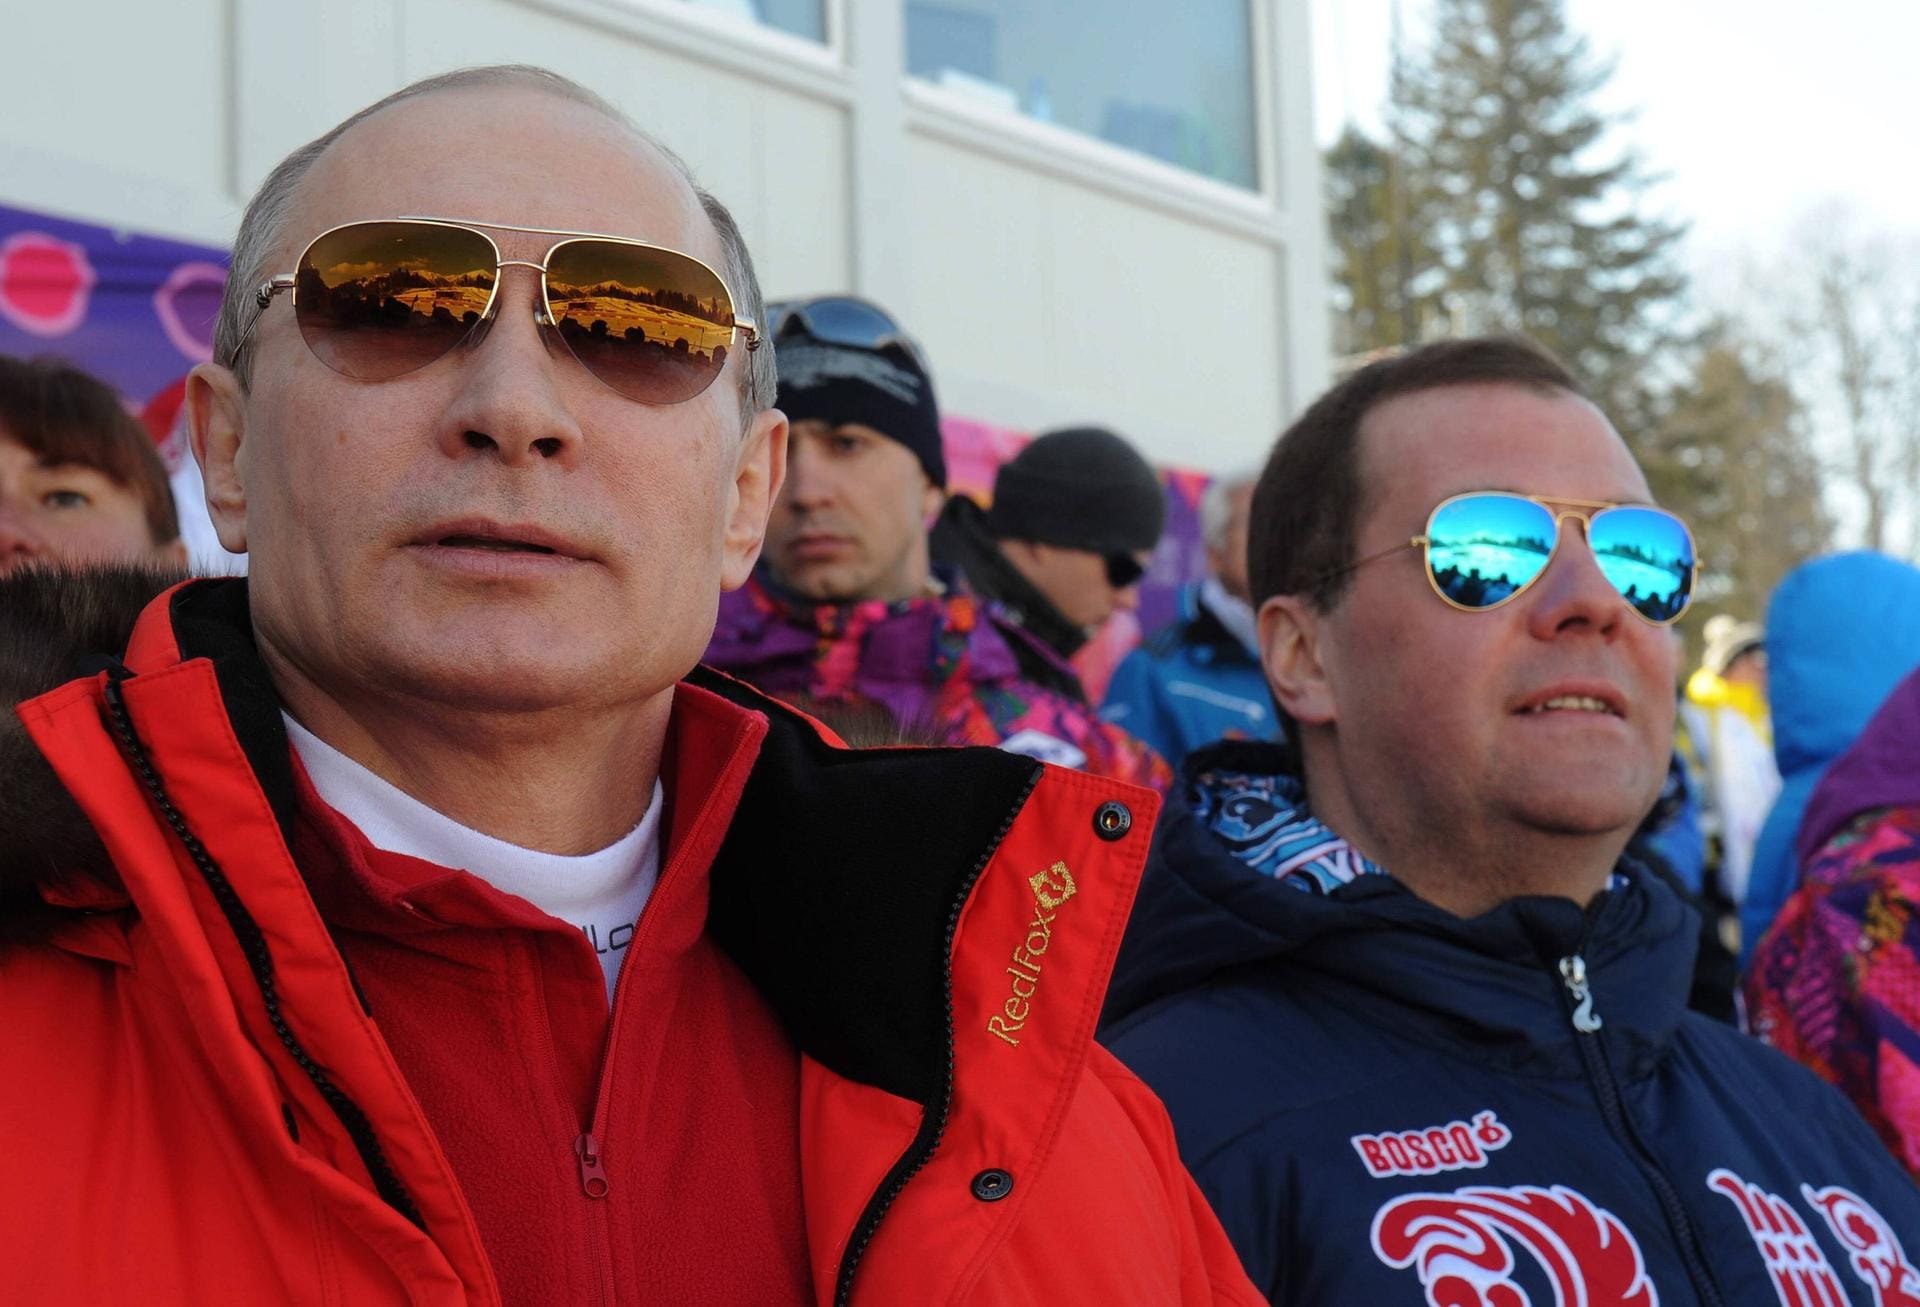 2014 beginnt mit einem Highlight im eigenen Land: In Sotschi richtet Russland erstmals die Olympischen Winterspiele aus. Putin ließ dafür den Ort am Schwarzen Meer, der eigentlich nicht für Wintersport bekannt ist, unter großer Kritik umbauen. Nach dem Ende der Wettkämpfe annektiert Russland völkerrechtswidrig die ukrainische Halbinsel Krim.